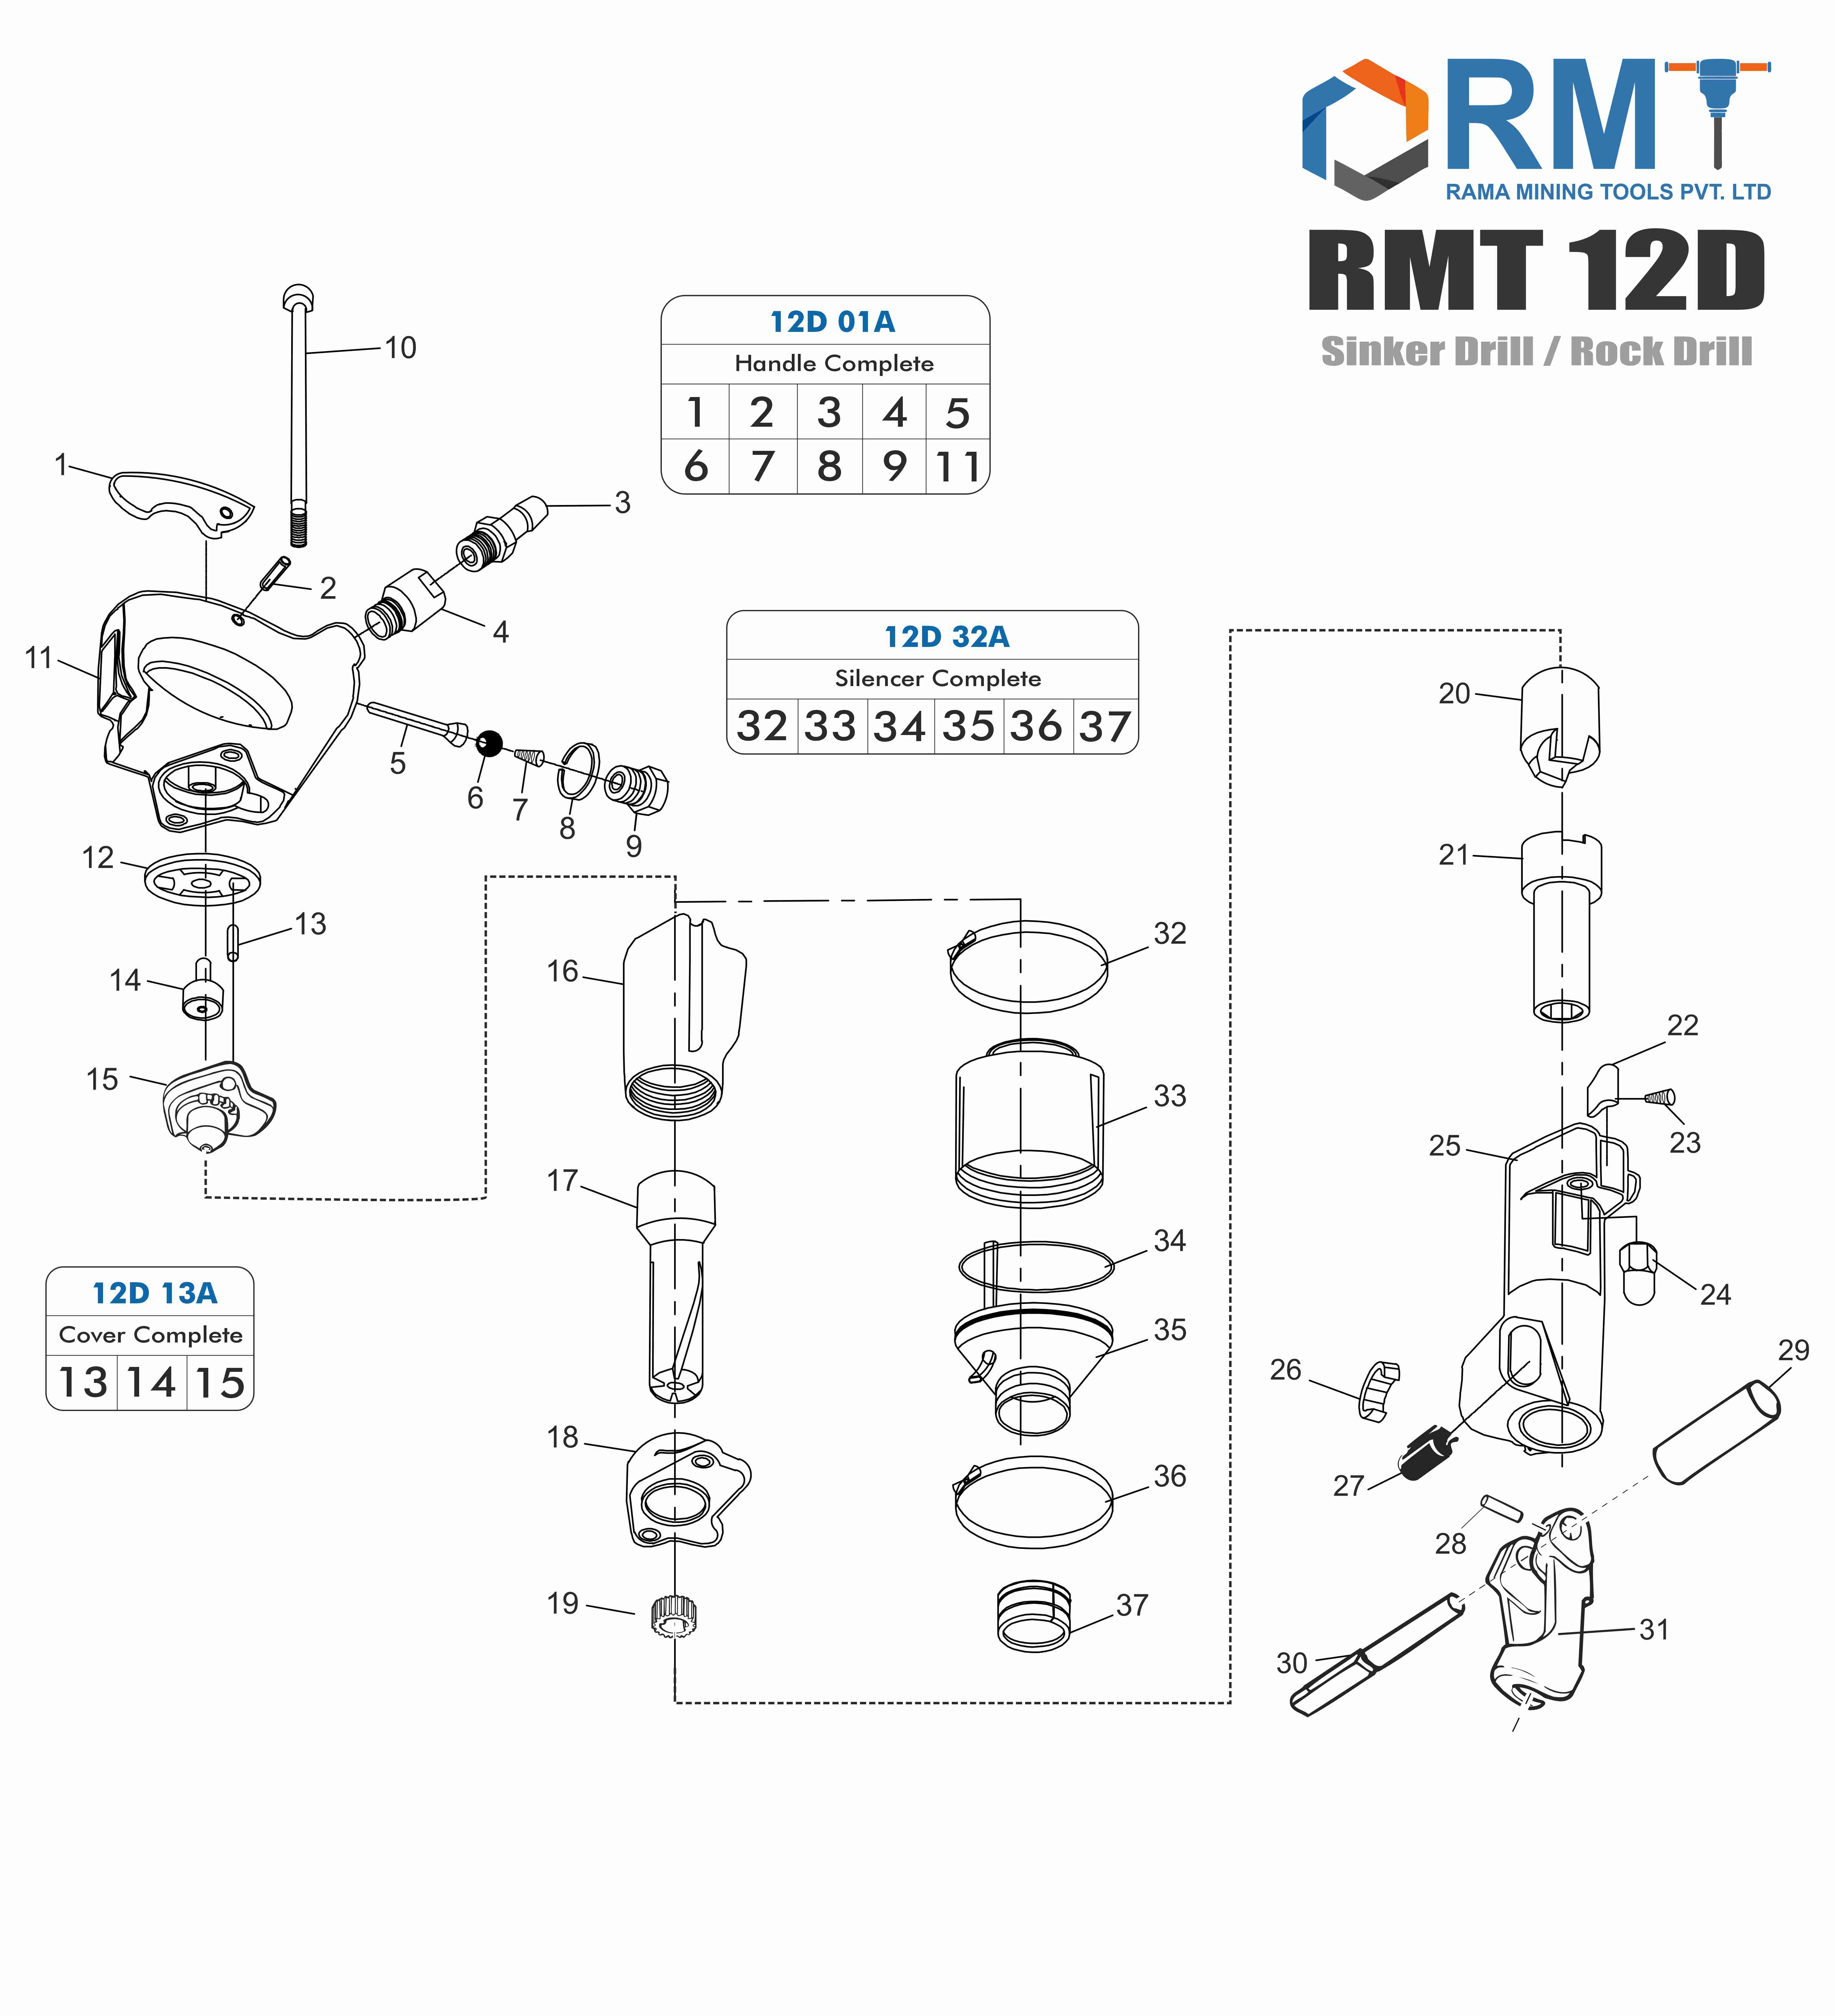 RMT 12D - Pneumatic Rock Drill